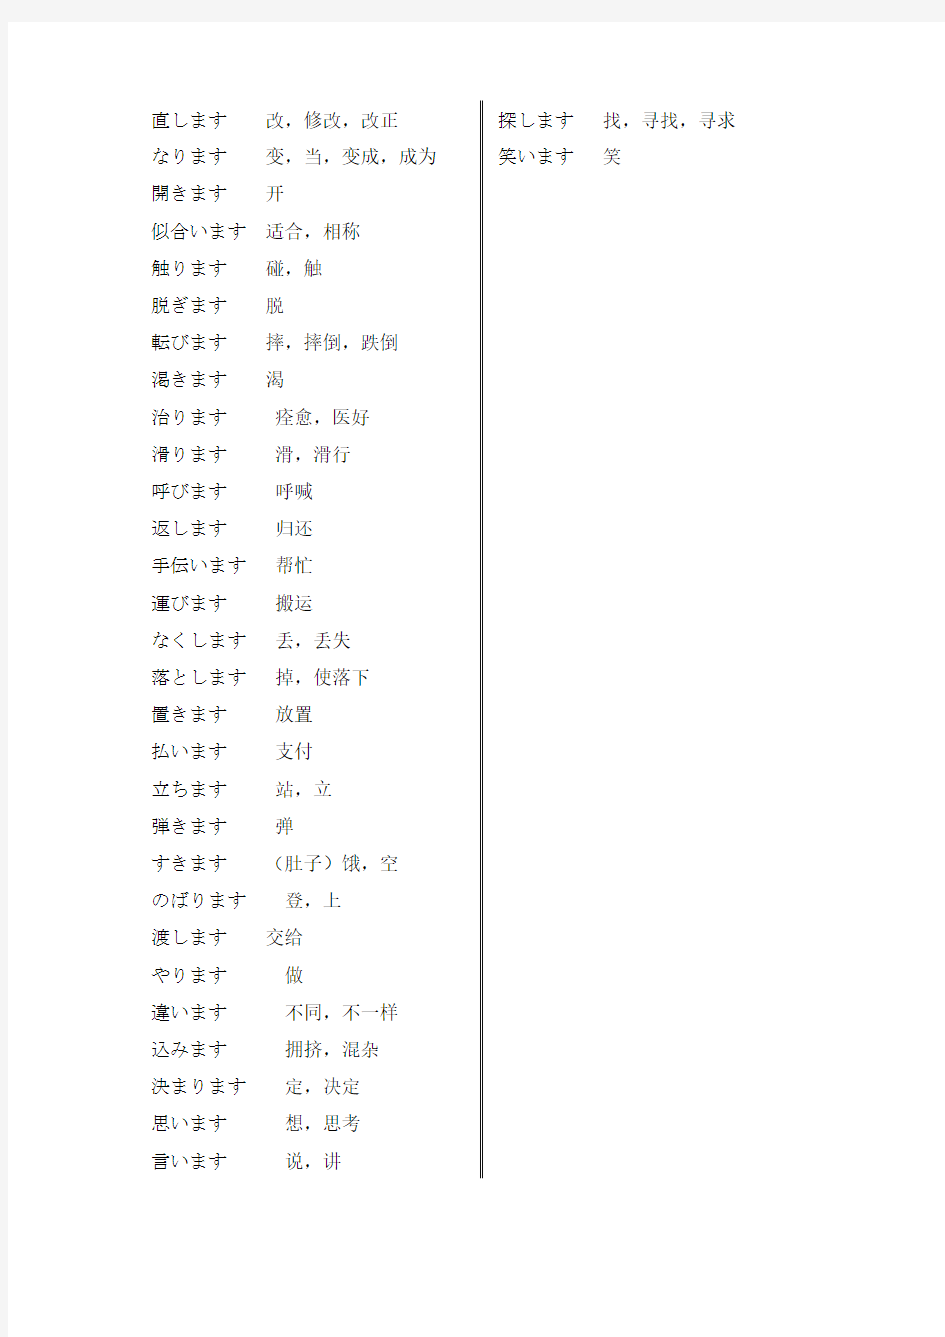 标准日本语  初级  上  1类动词总结